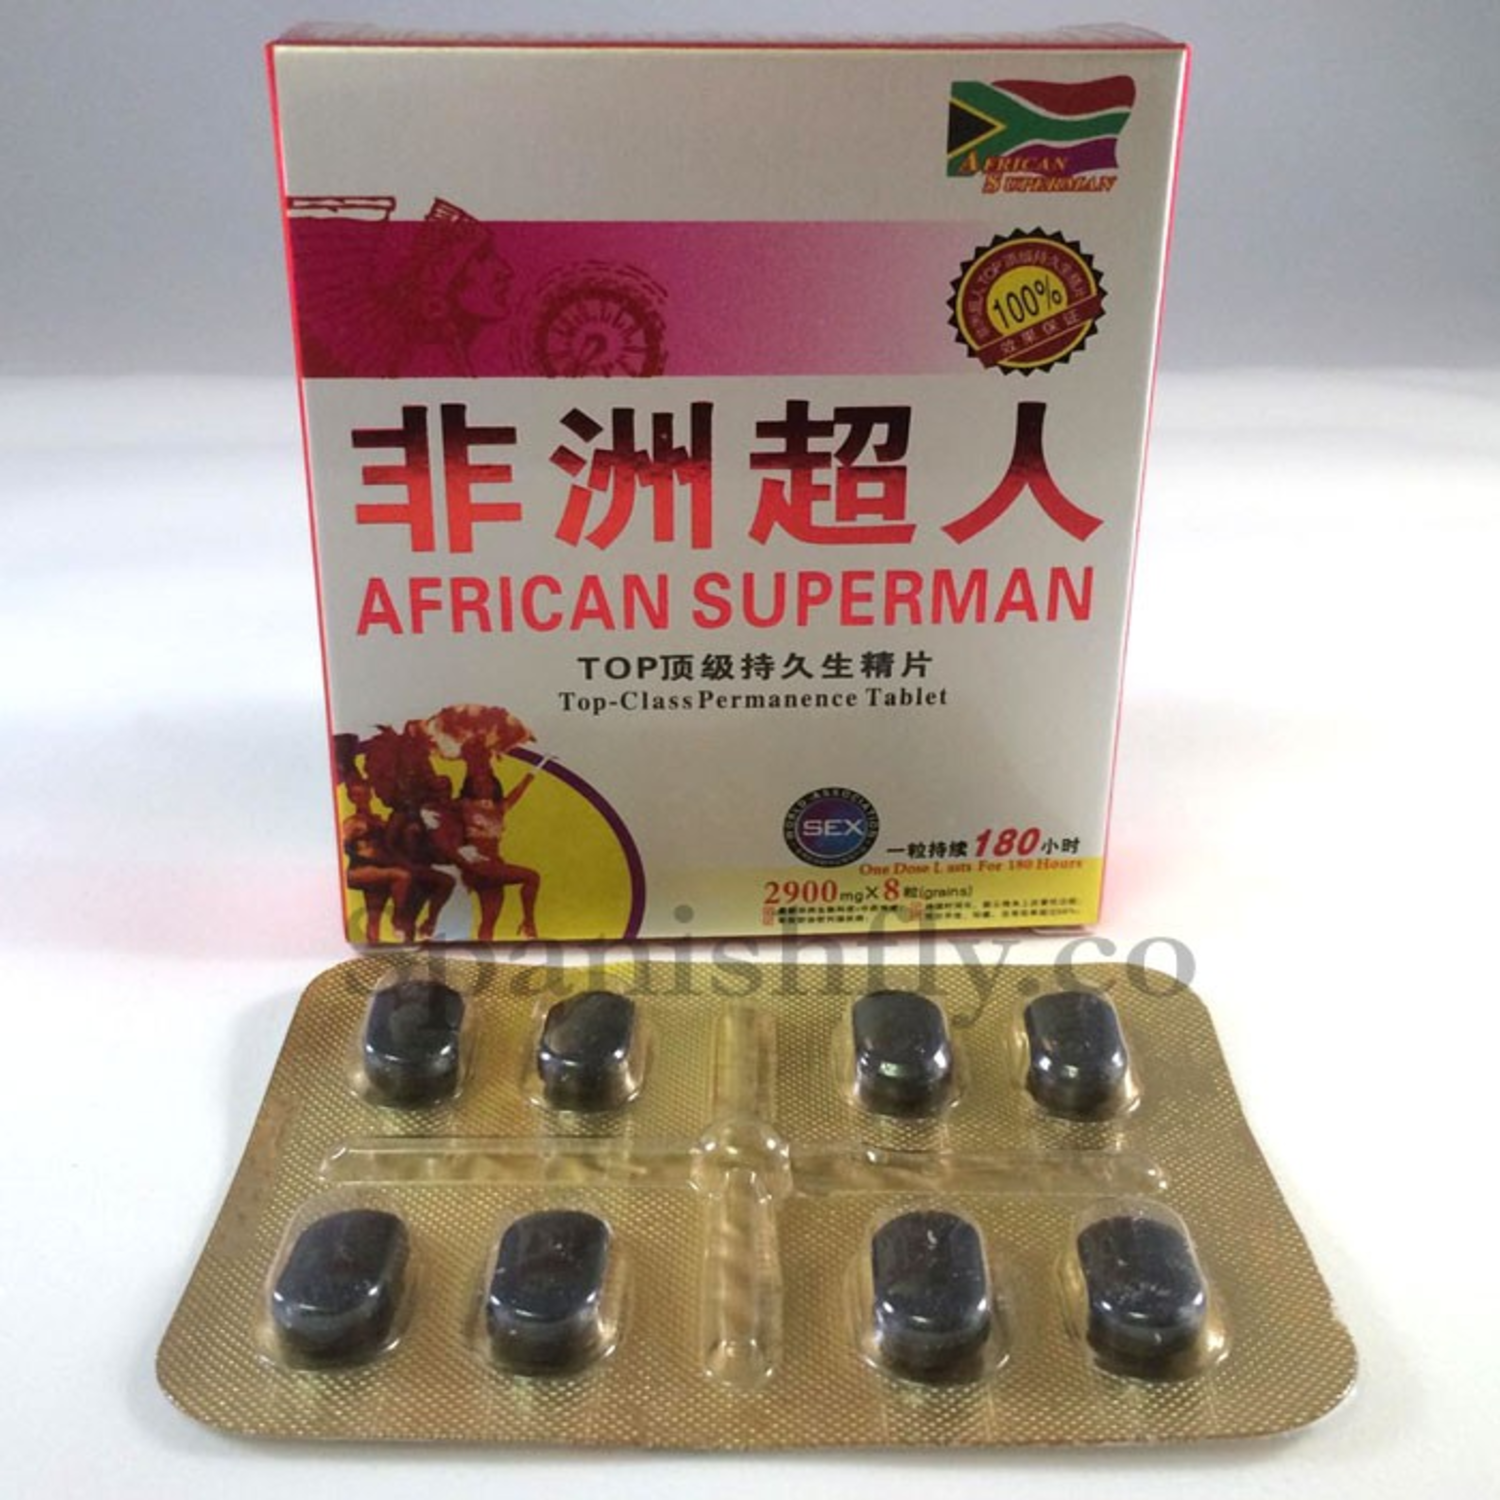 African Superman Sex Enhancement Pills